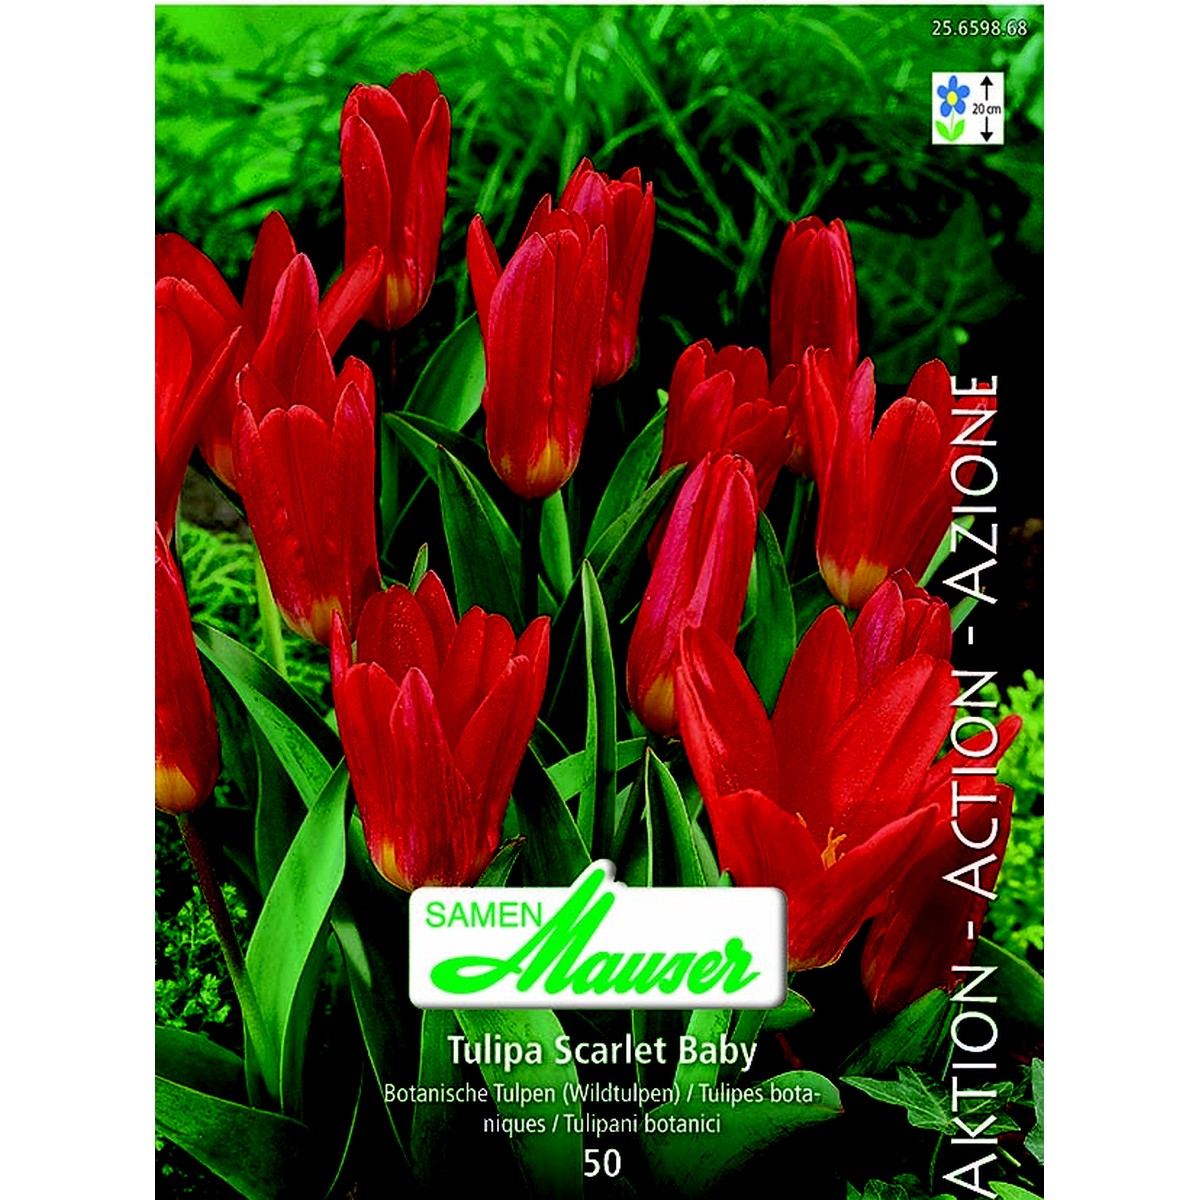   Tulipe botanique Scarlet Baby 50  12/